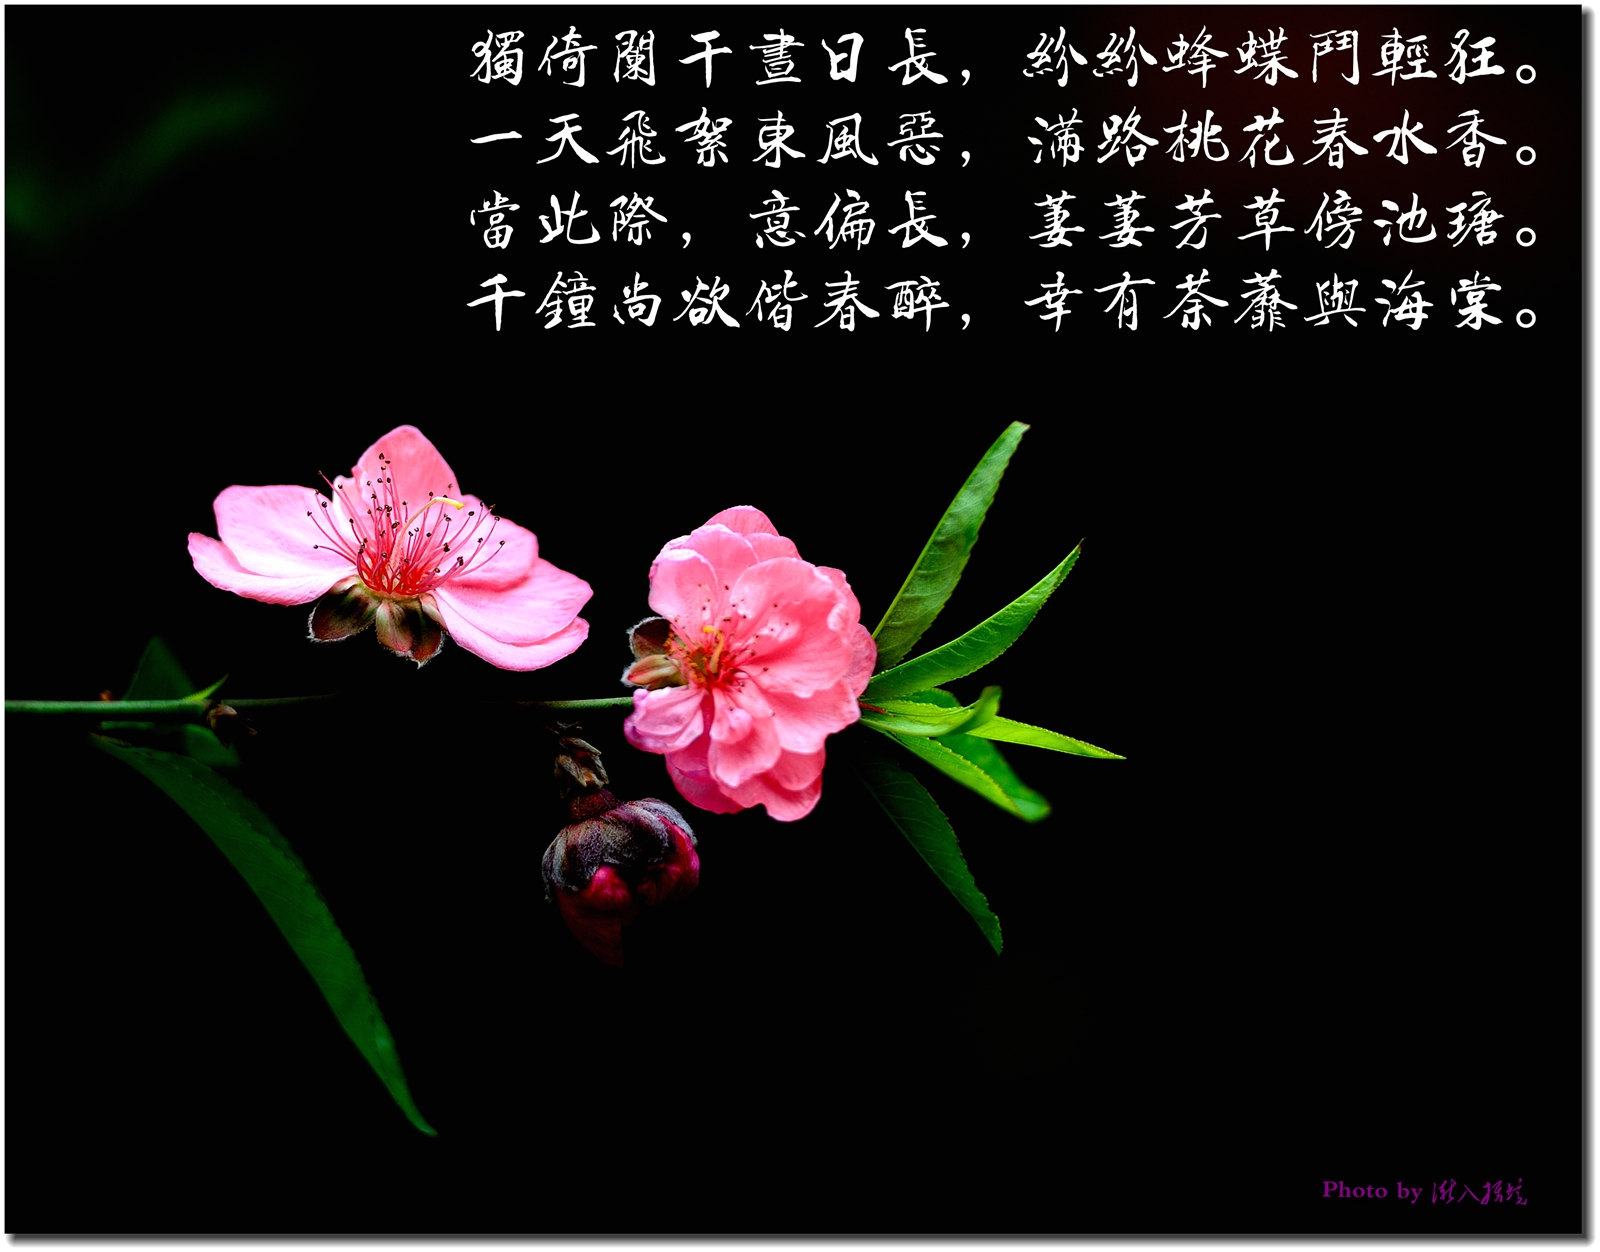 经典网 诗歌诗句 关于桃花的诗句大全  引导语:阳春三月,正是桃花盛开